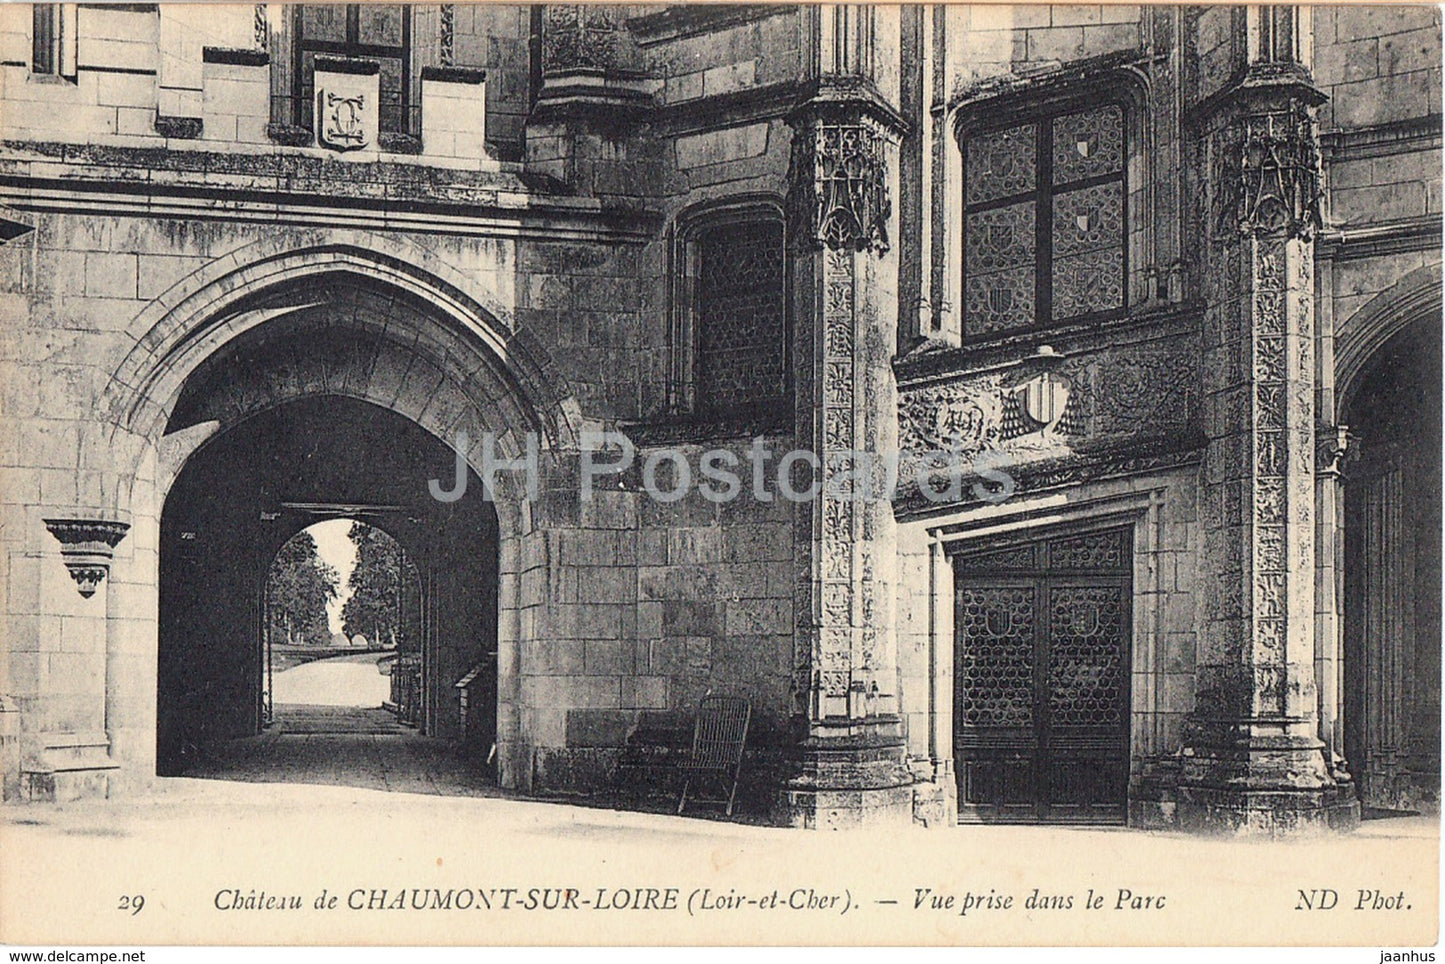 Chateau de Chaumont sur Loire - Vue Prise dans le Parc - 29 - castle - old postcard - France - unused